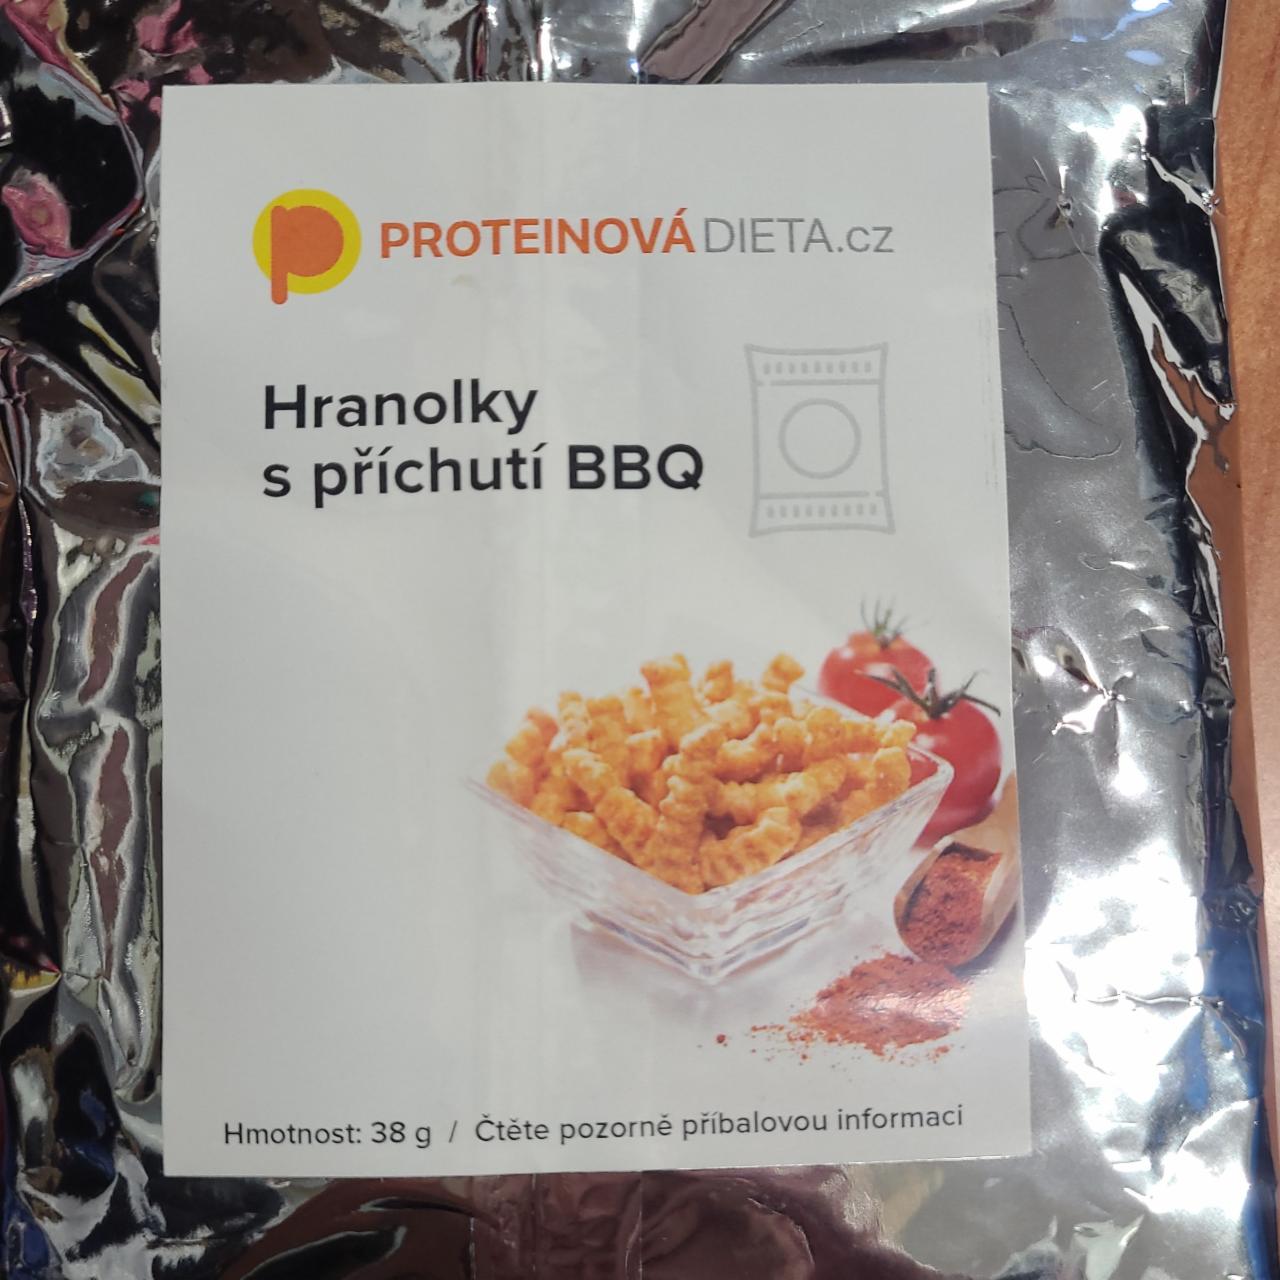 Fotografie - Hranolky s příchutí BBQ ProteinováDieta.cz